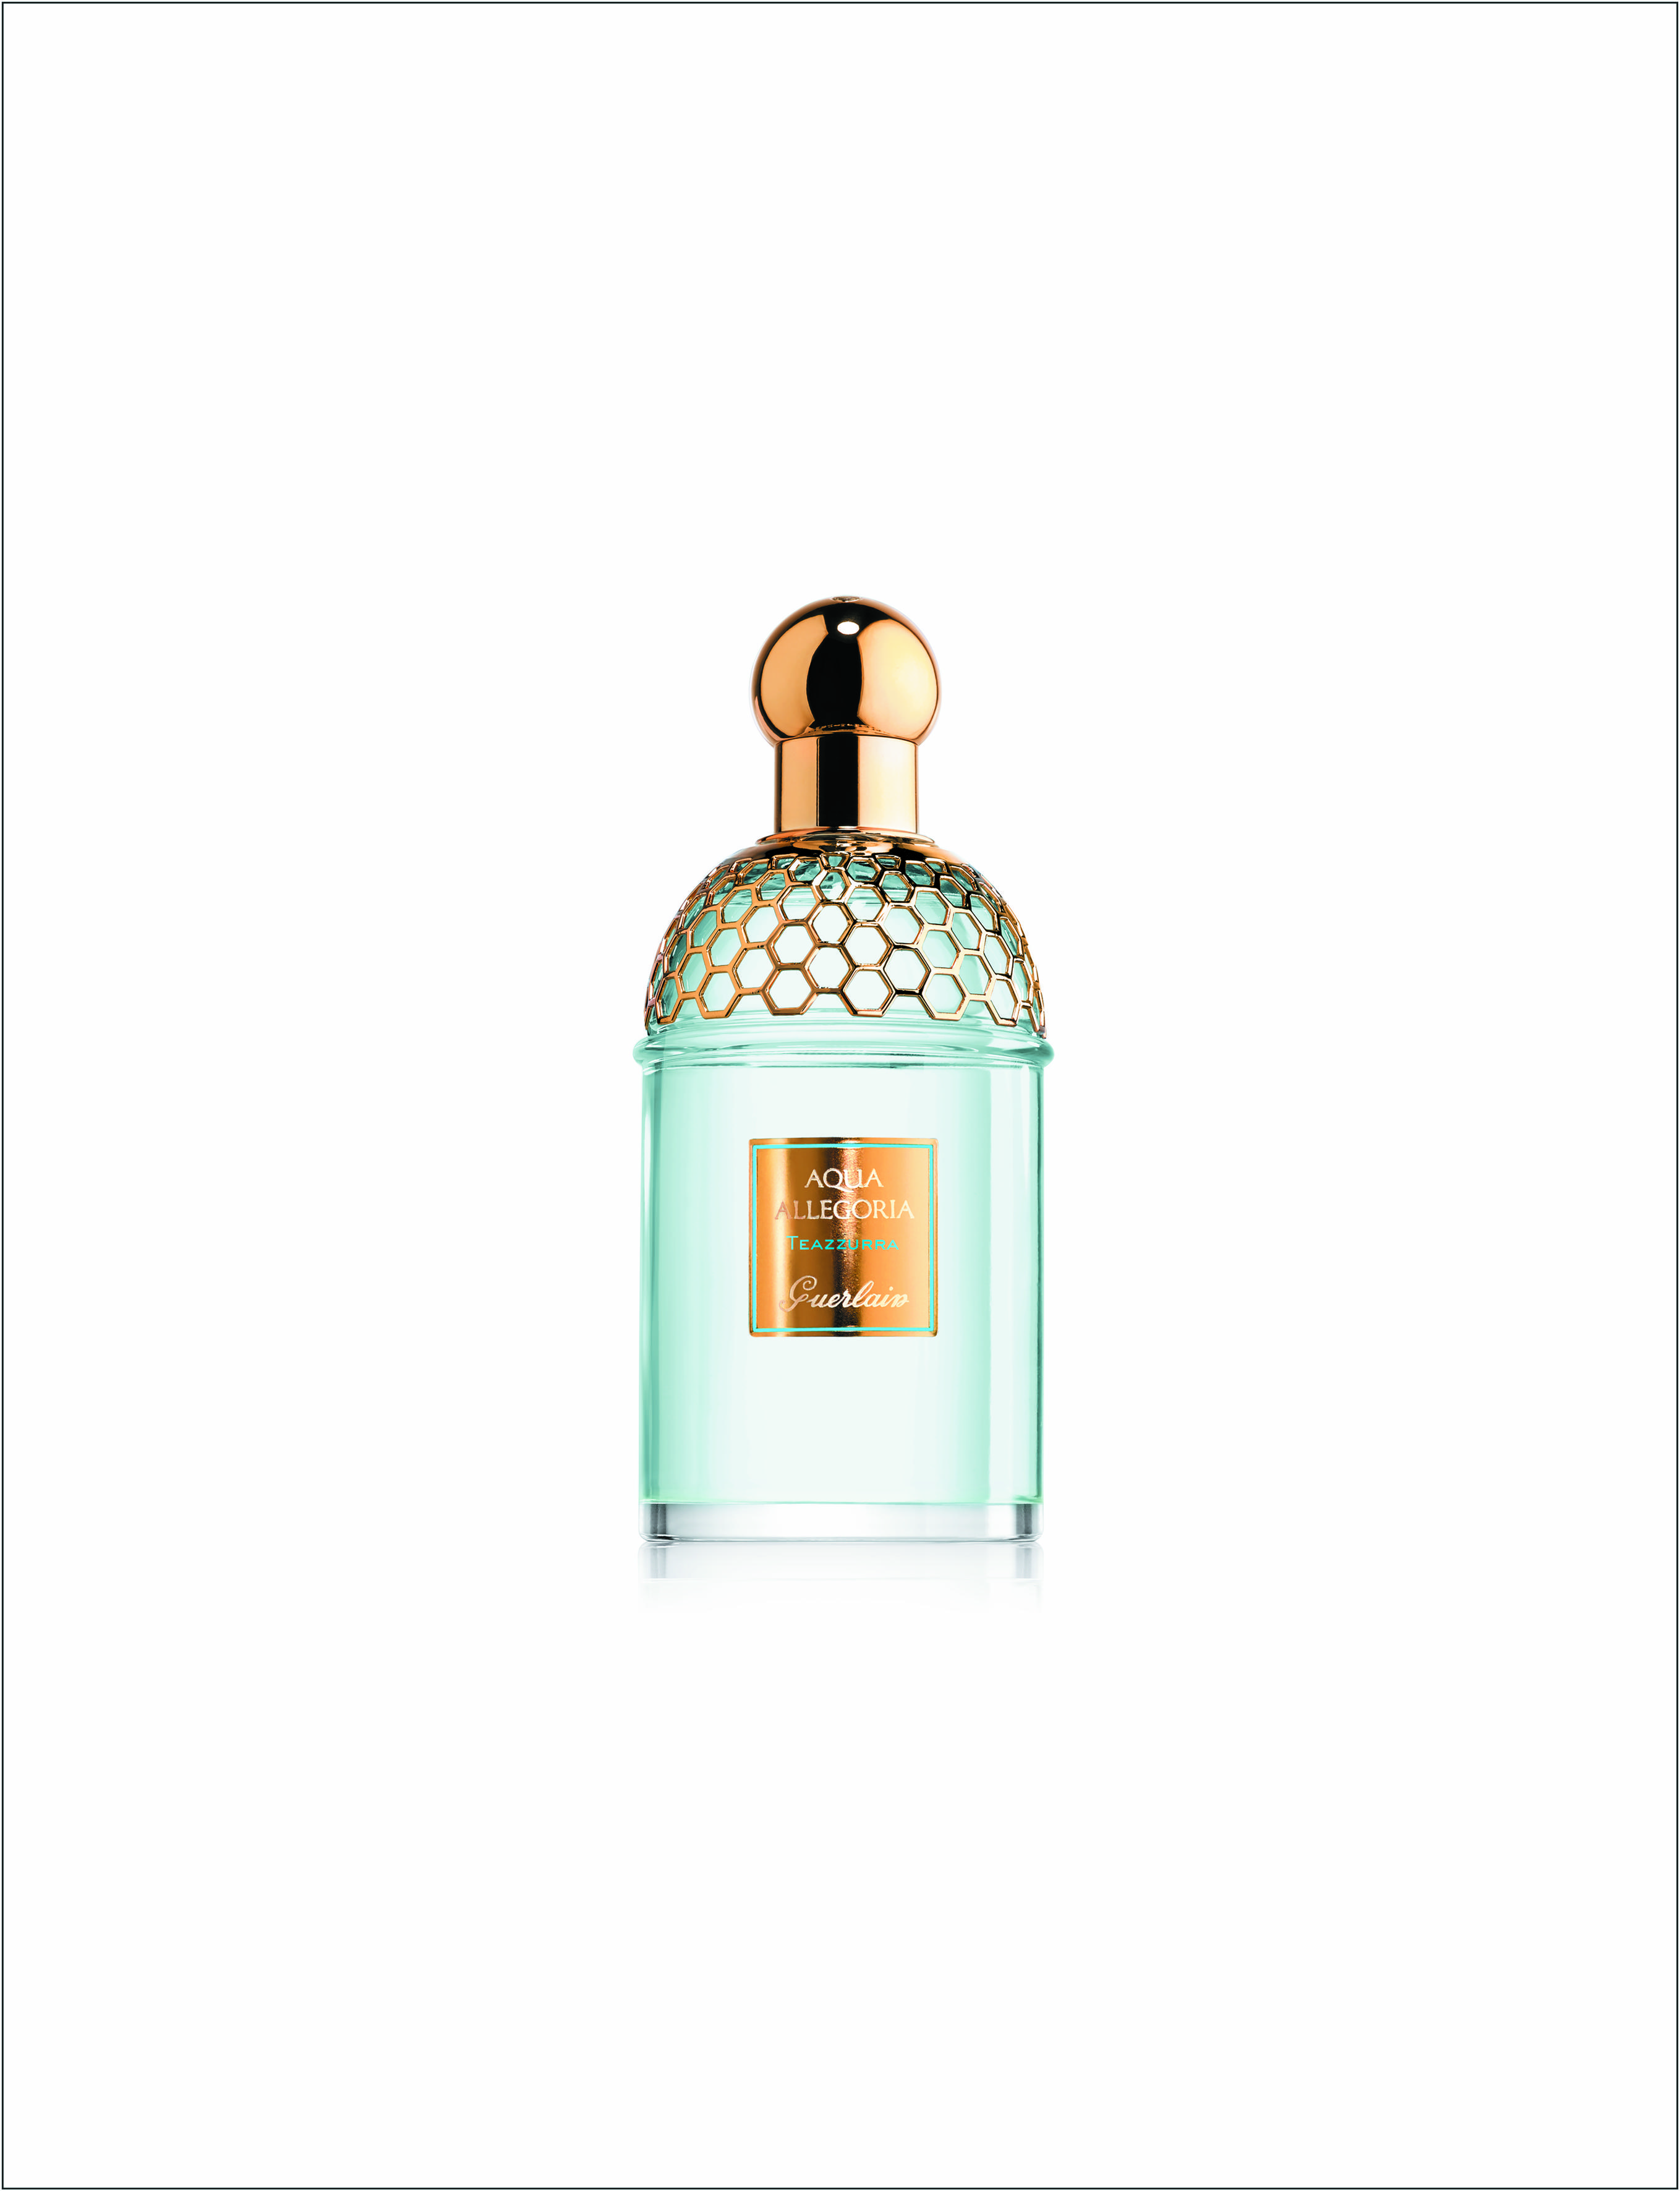 Il flacone di 'Teazzurra' di Guerlain, con note aromatiche e floreali